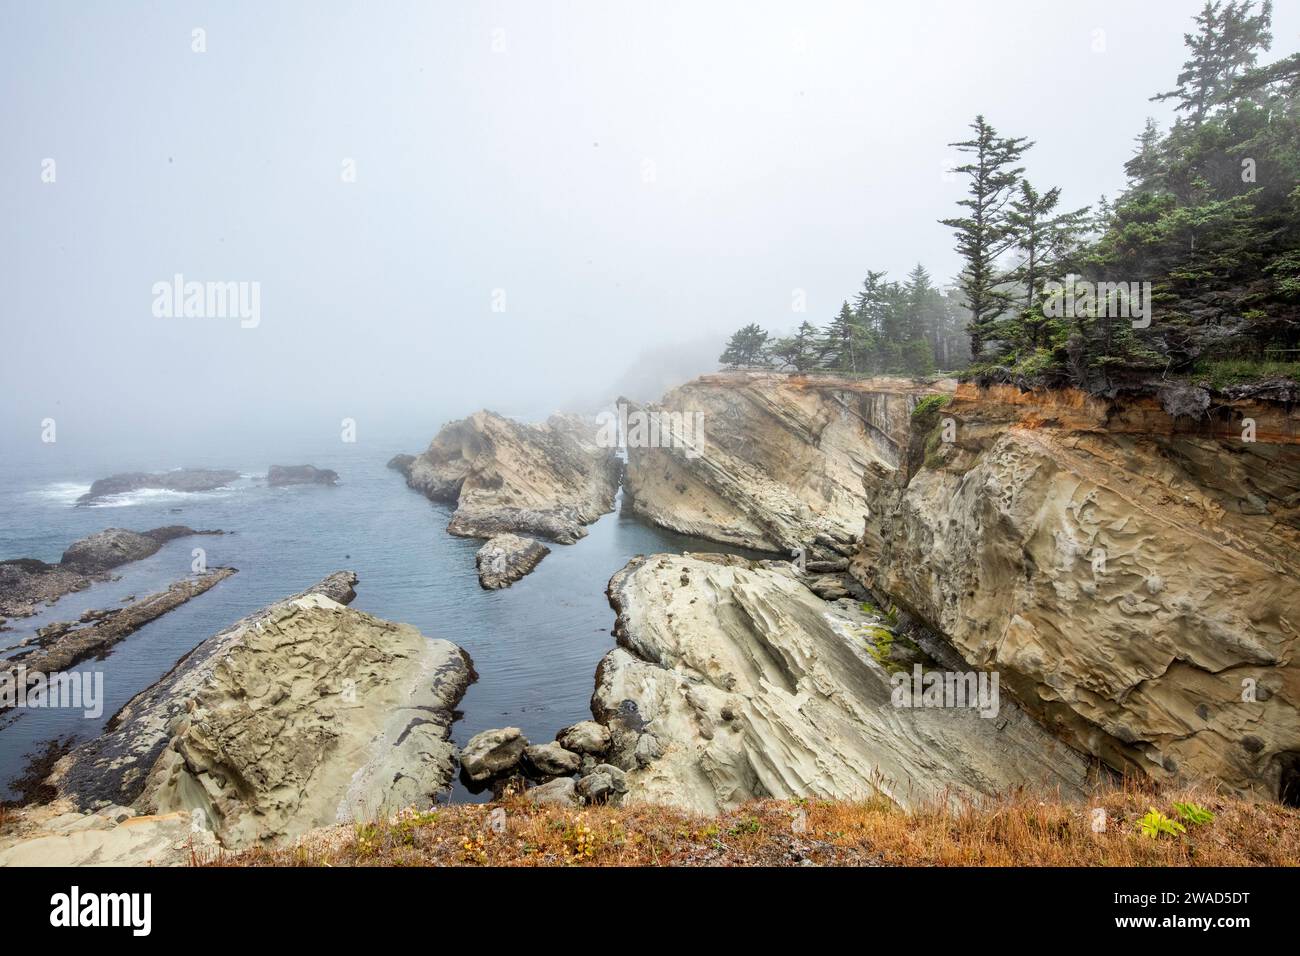 Estados Unidos, Oregón, Coos Bay, formaciones rocosas a lo largo del mar en el día de niebla Foto de stock